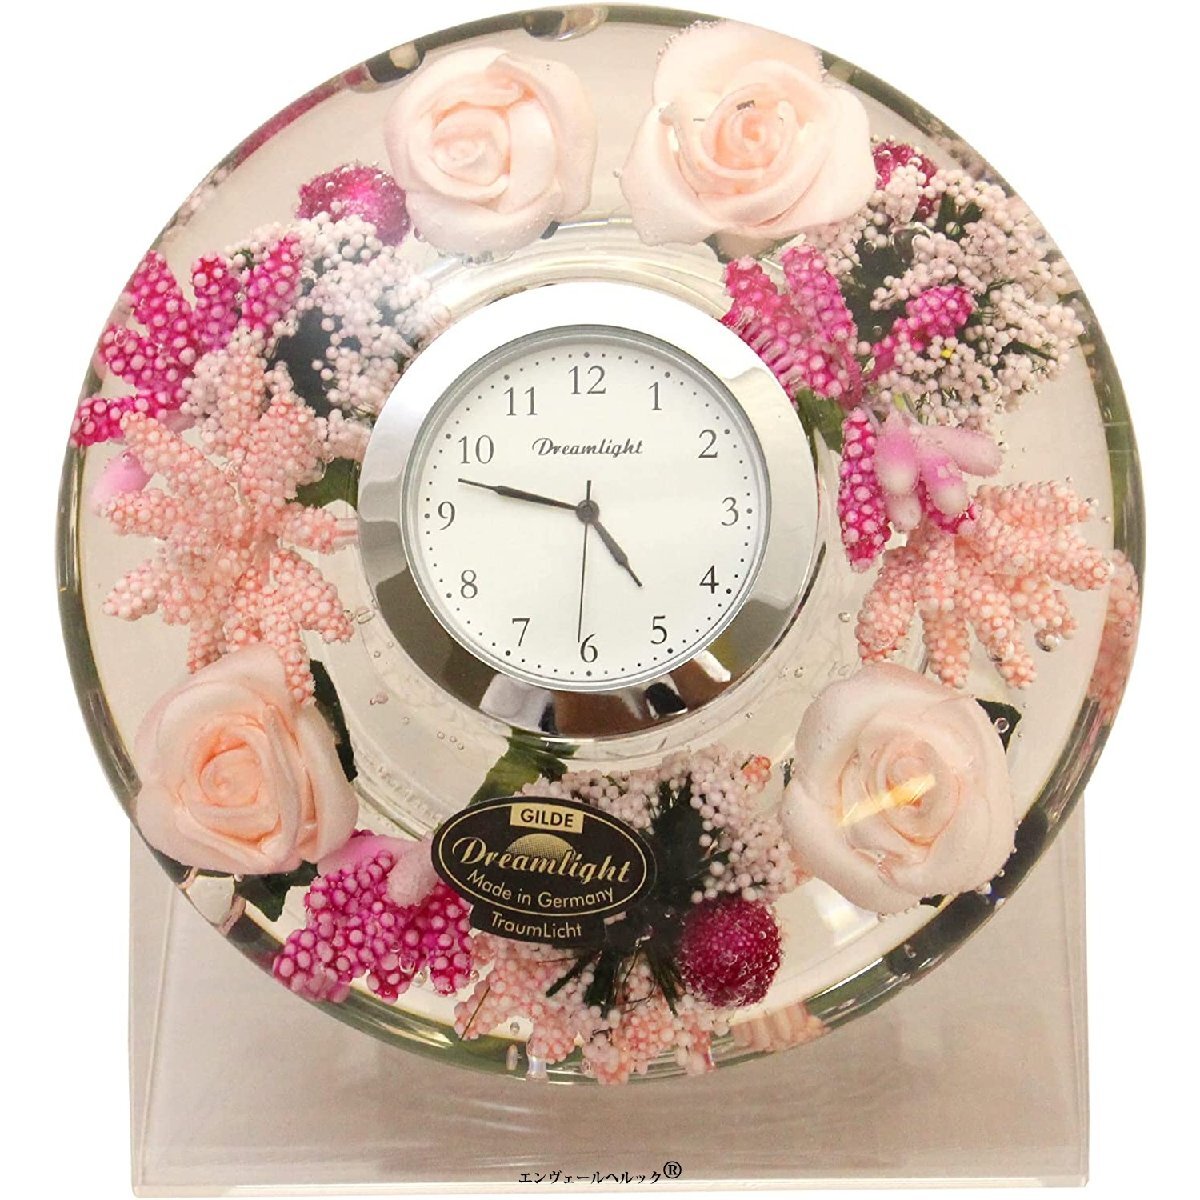 ひとつひとつをハンドメイドで仕上げた ナチュラルテイスト 置き時計 直径11×高さ4cm リトルローズ 愛らしいピンクの花々を集めたキュート, 置時計, アナログ, 一般